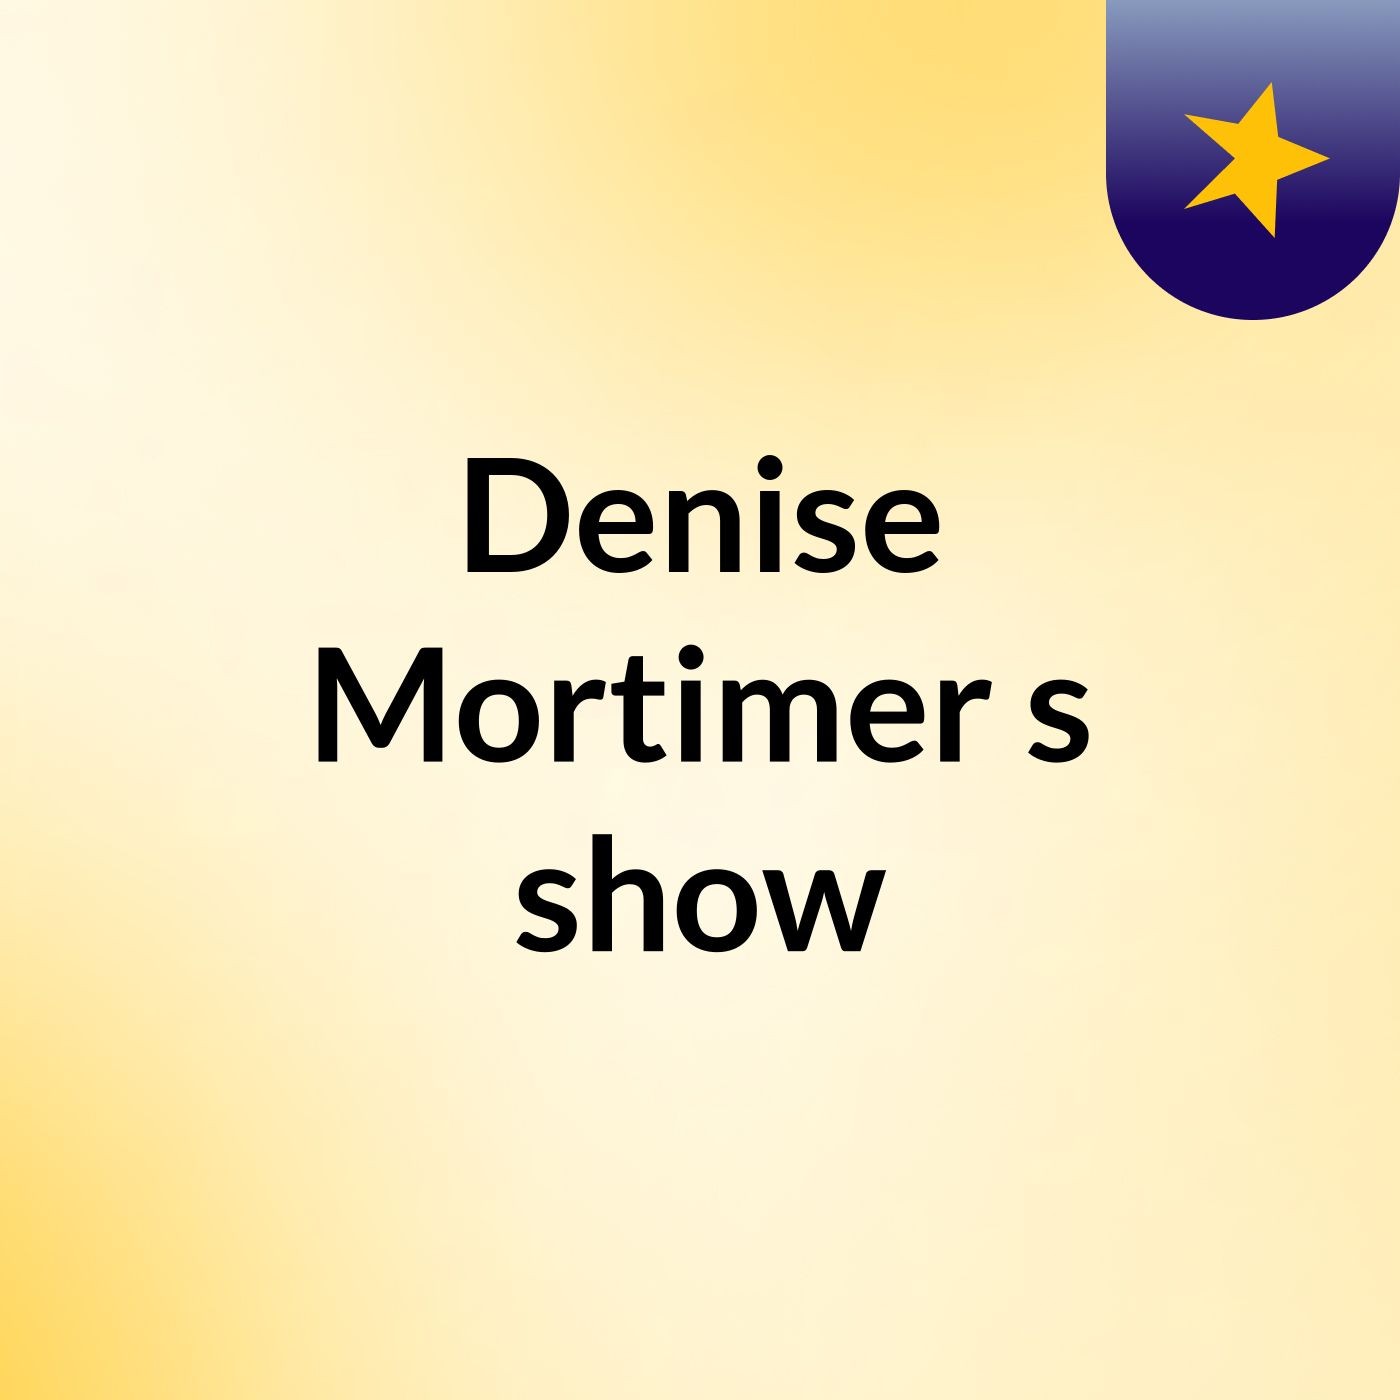 Denise Mortimer's show